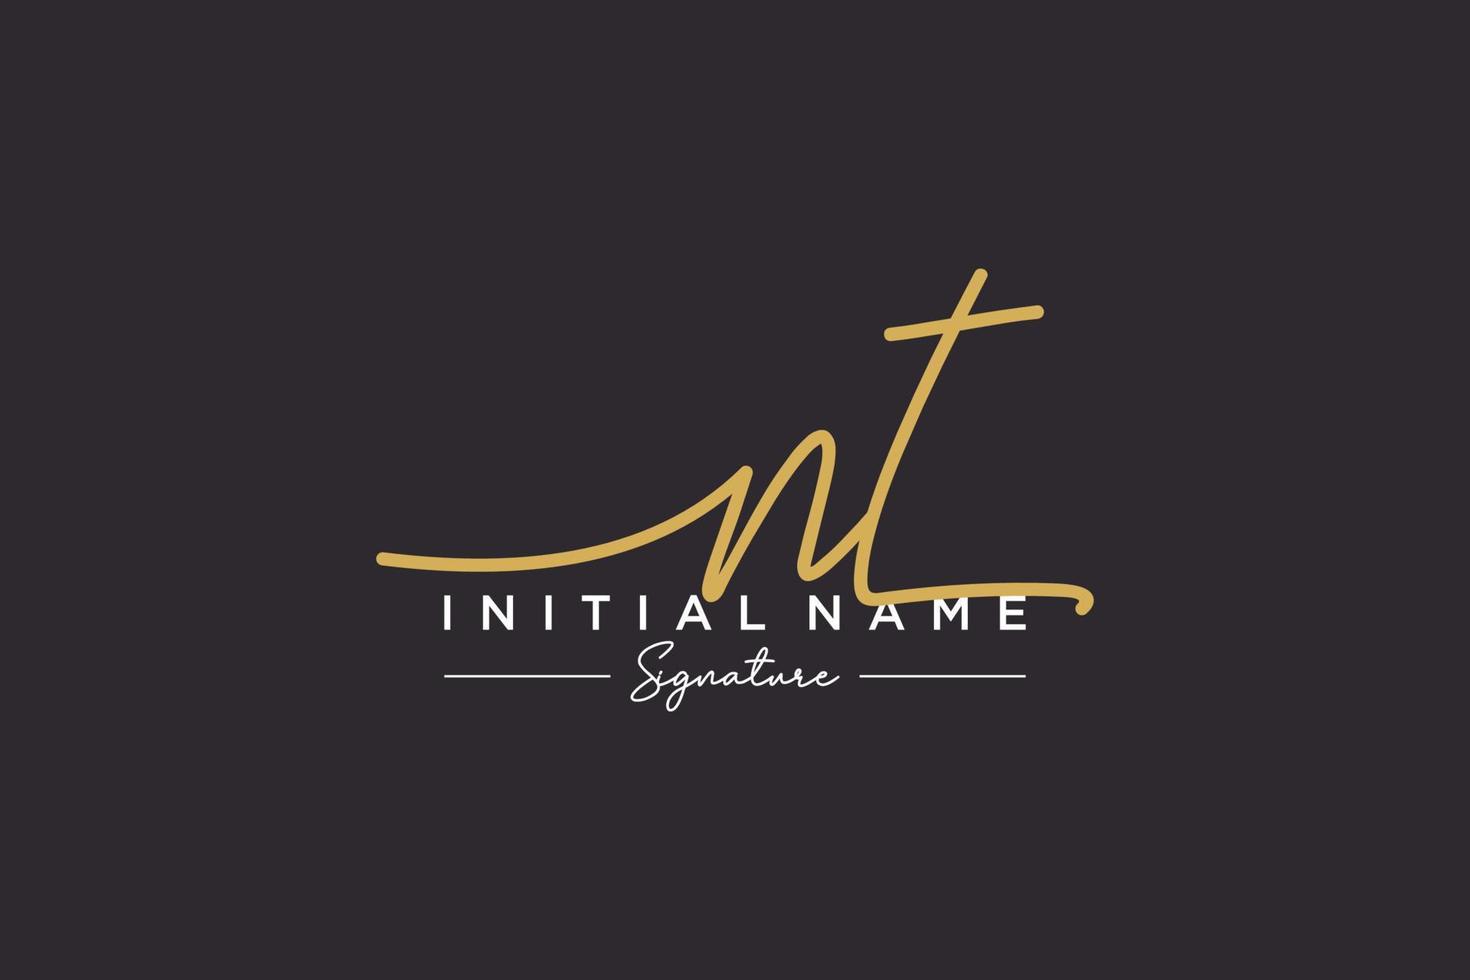 vector de plantilla de logotipo de firma inicial nt. ilustración de vector de letras de caligrafía dibujada a mano.